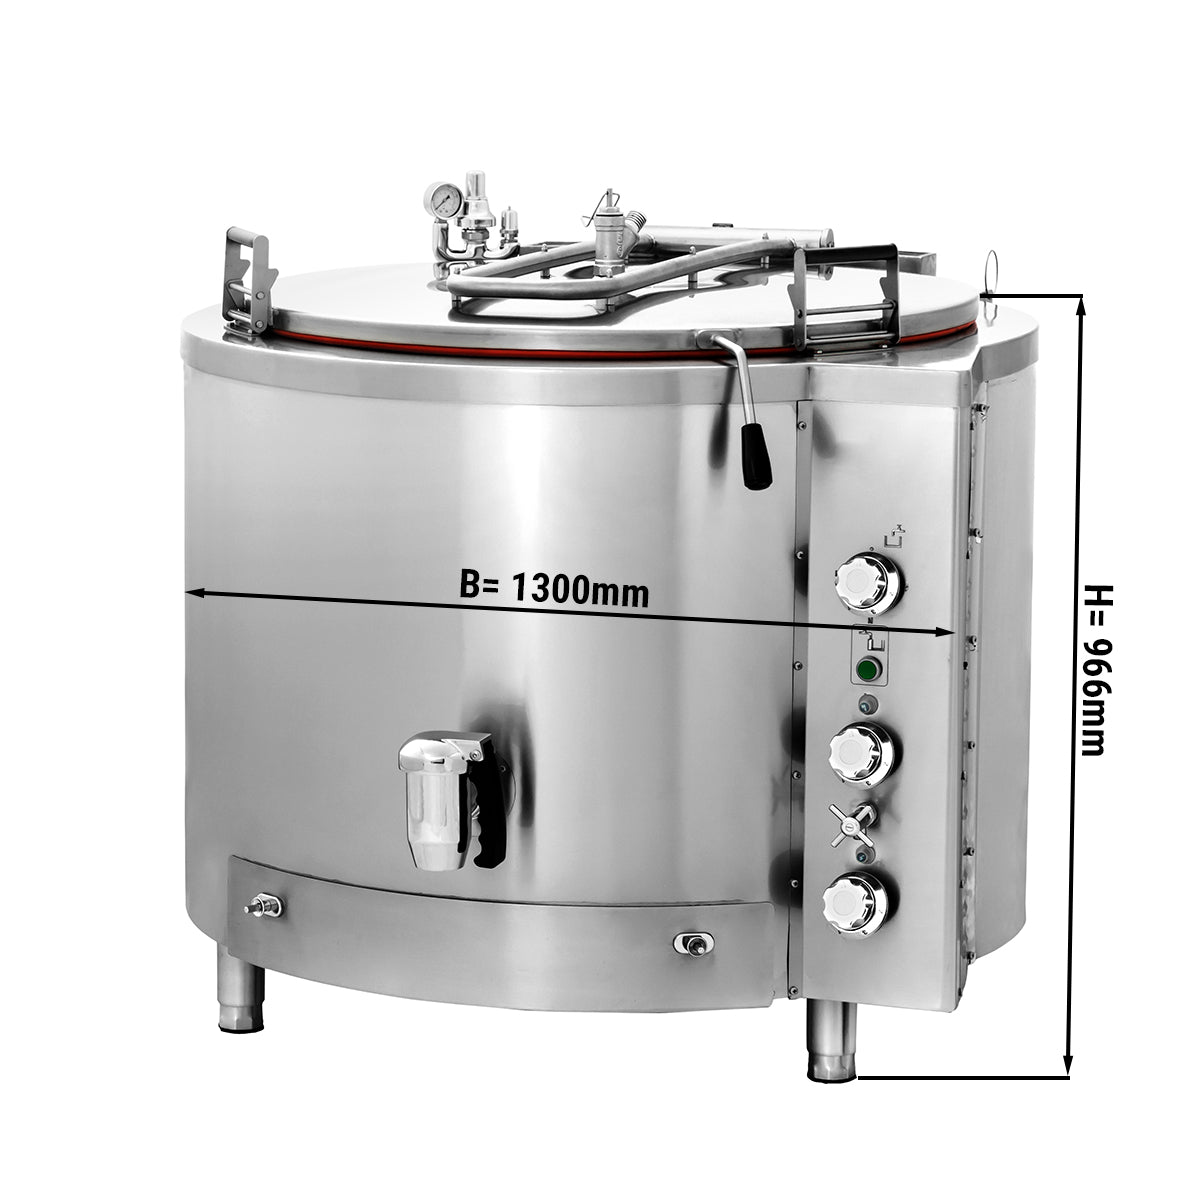 Gass kokegryte - 500 liter - Indirekte oppvarming